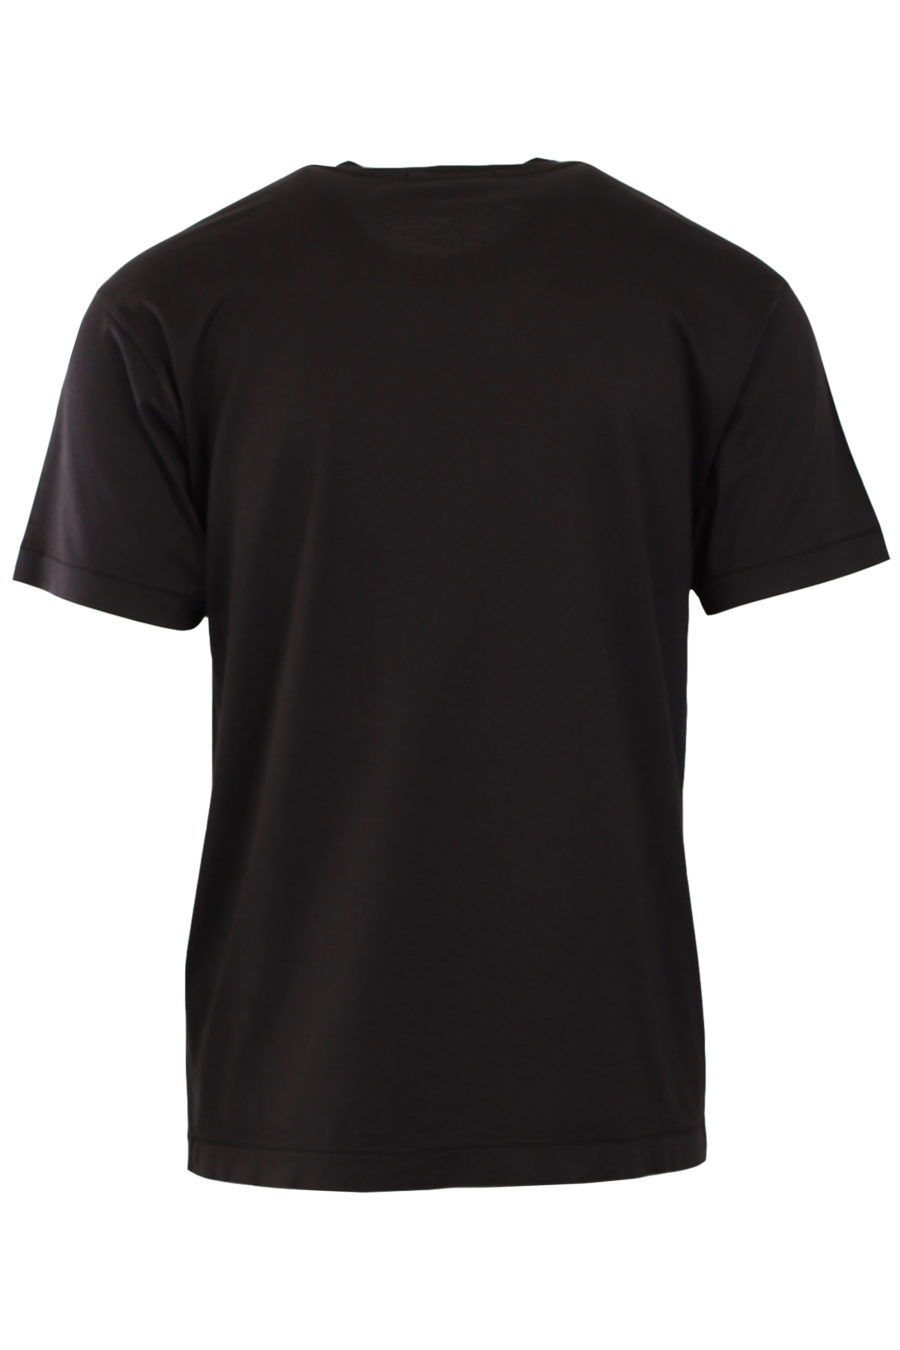 Schwarzes T-Shirt mit Markenaufnäher - e4ba621b24b507431868362732a40108574e574b